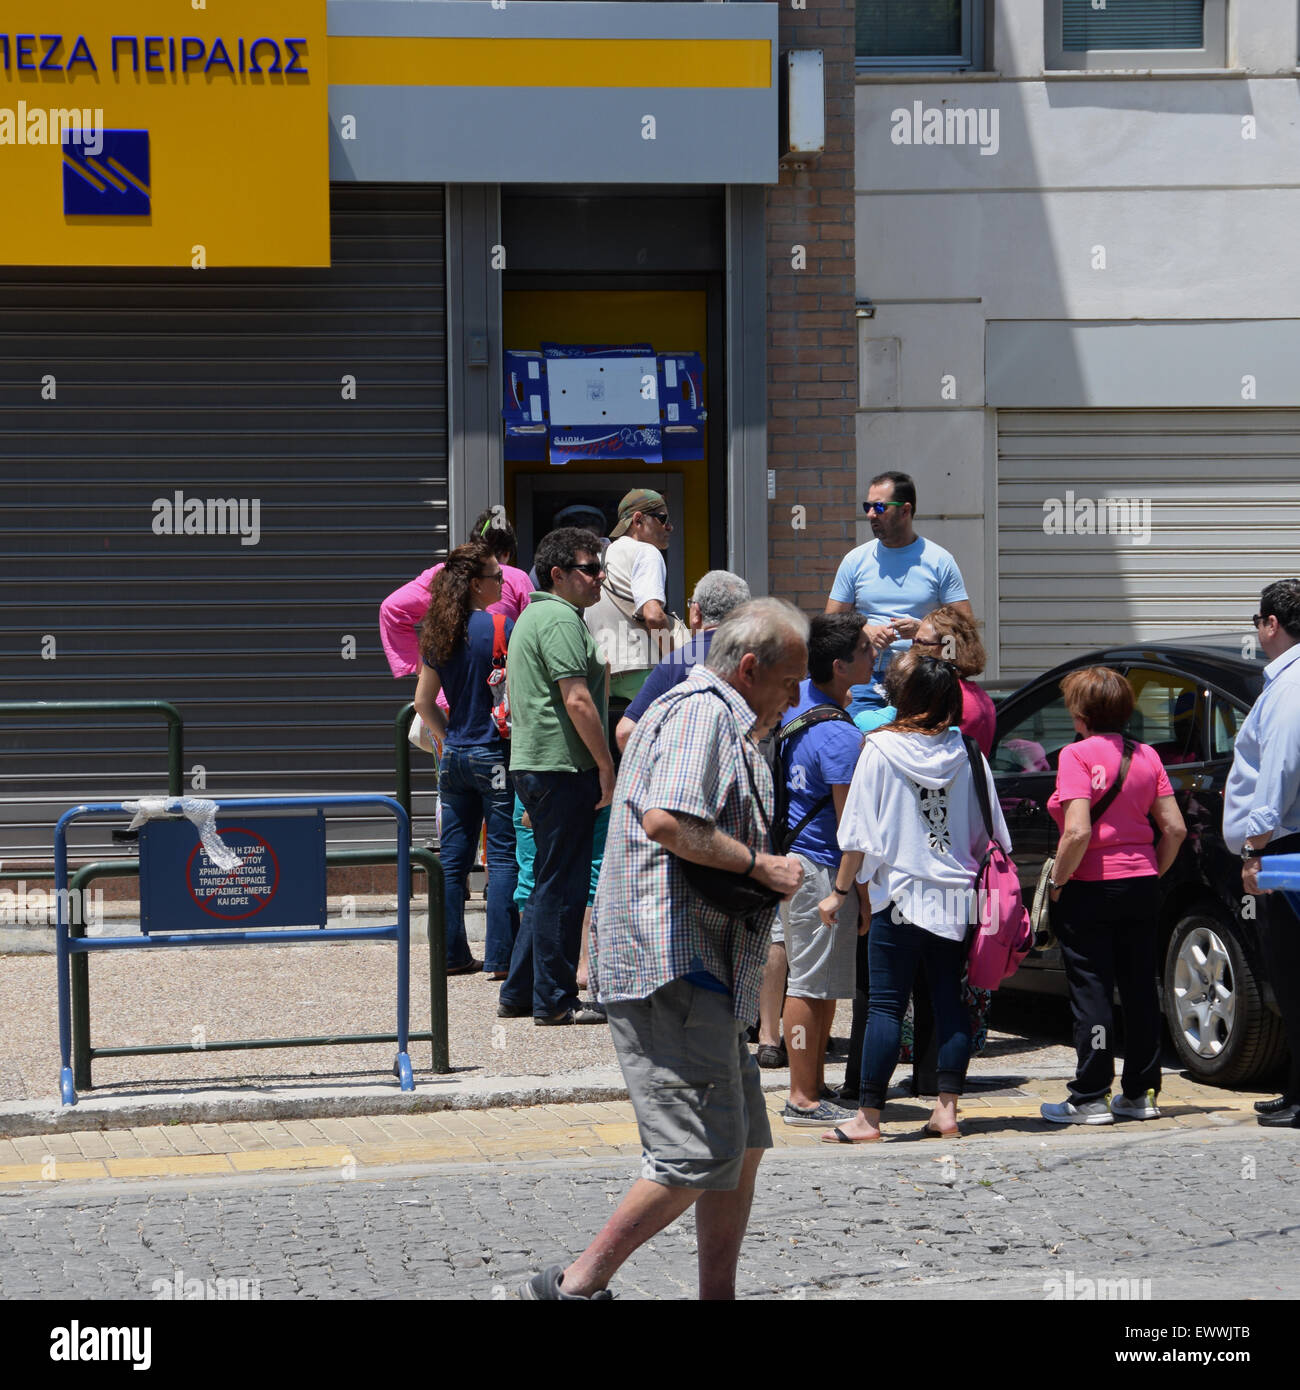 Cola de gente esperando por el dinero de un cajero automático en frente de un banco cerrado después de los controles de capital fueron implementadas. Atenas, Grecia. Foto de stock